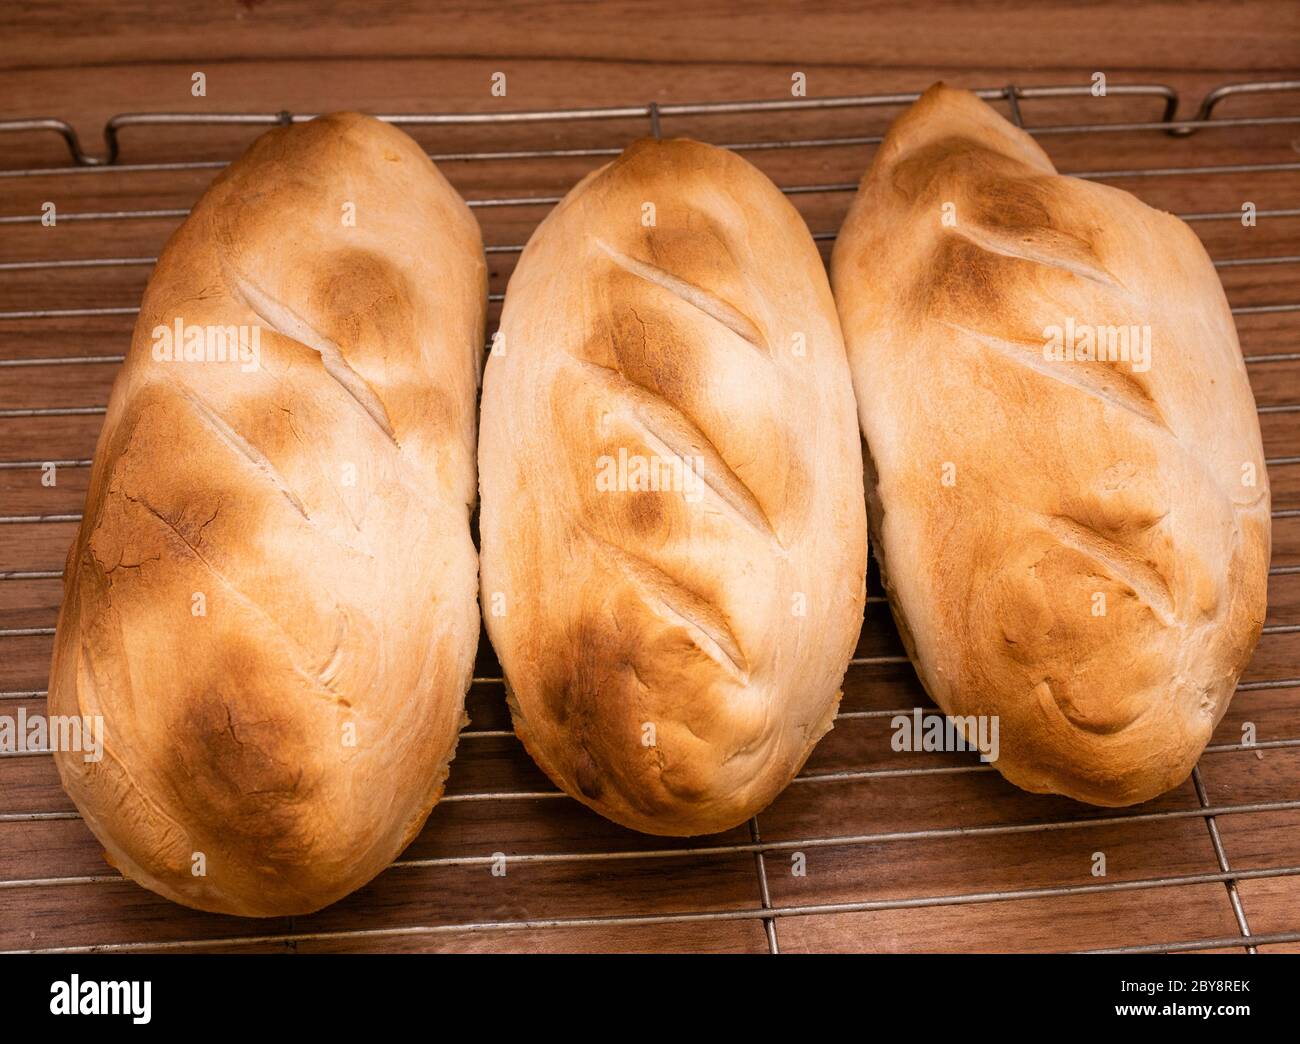 Hausgemachte saure Teig Brot in Form von drei kleinen Broten als petite Schmerzen bekannt Stockfoto